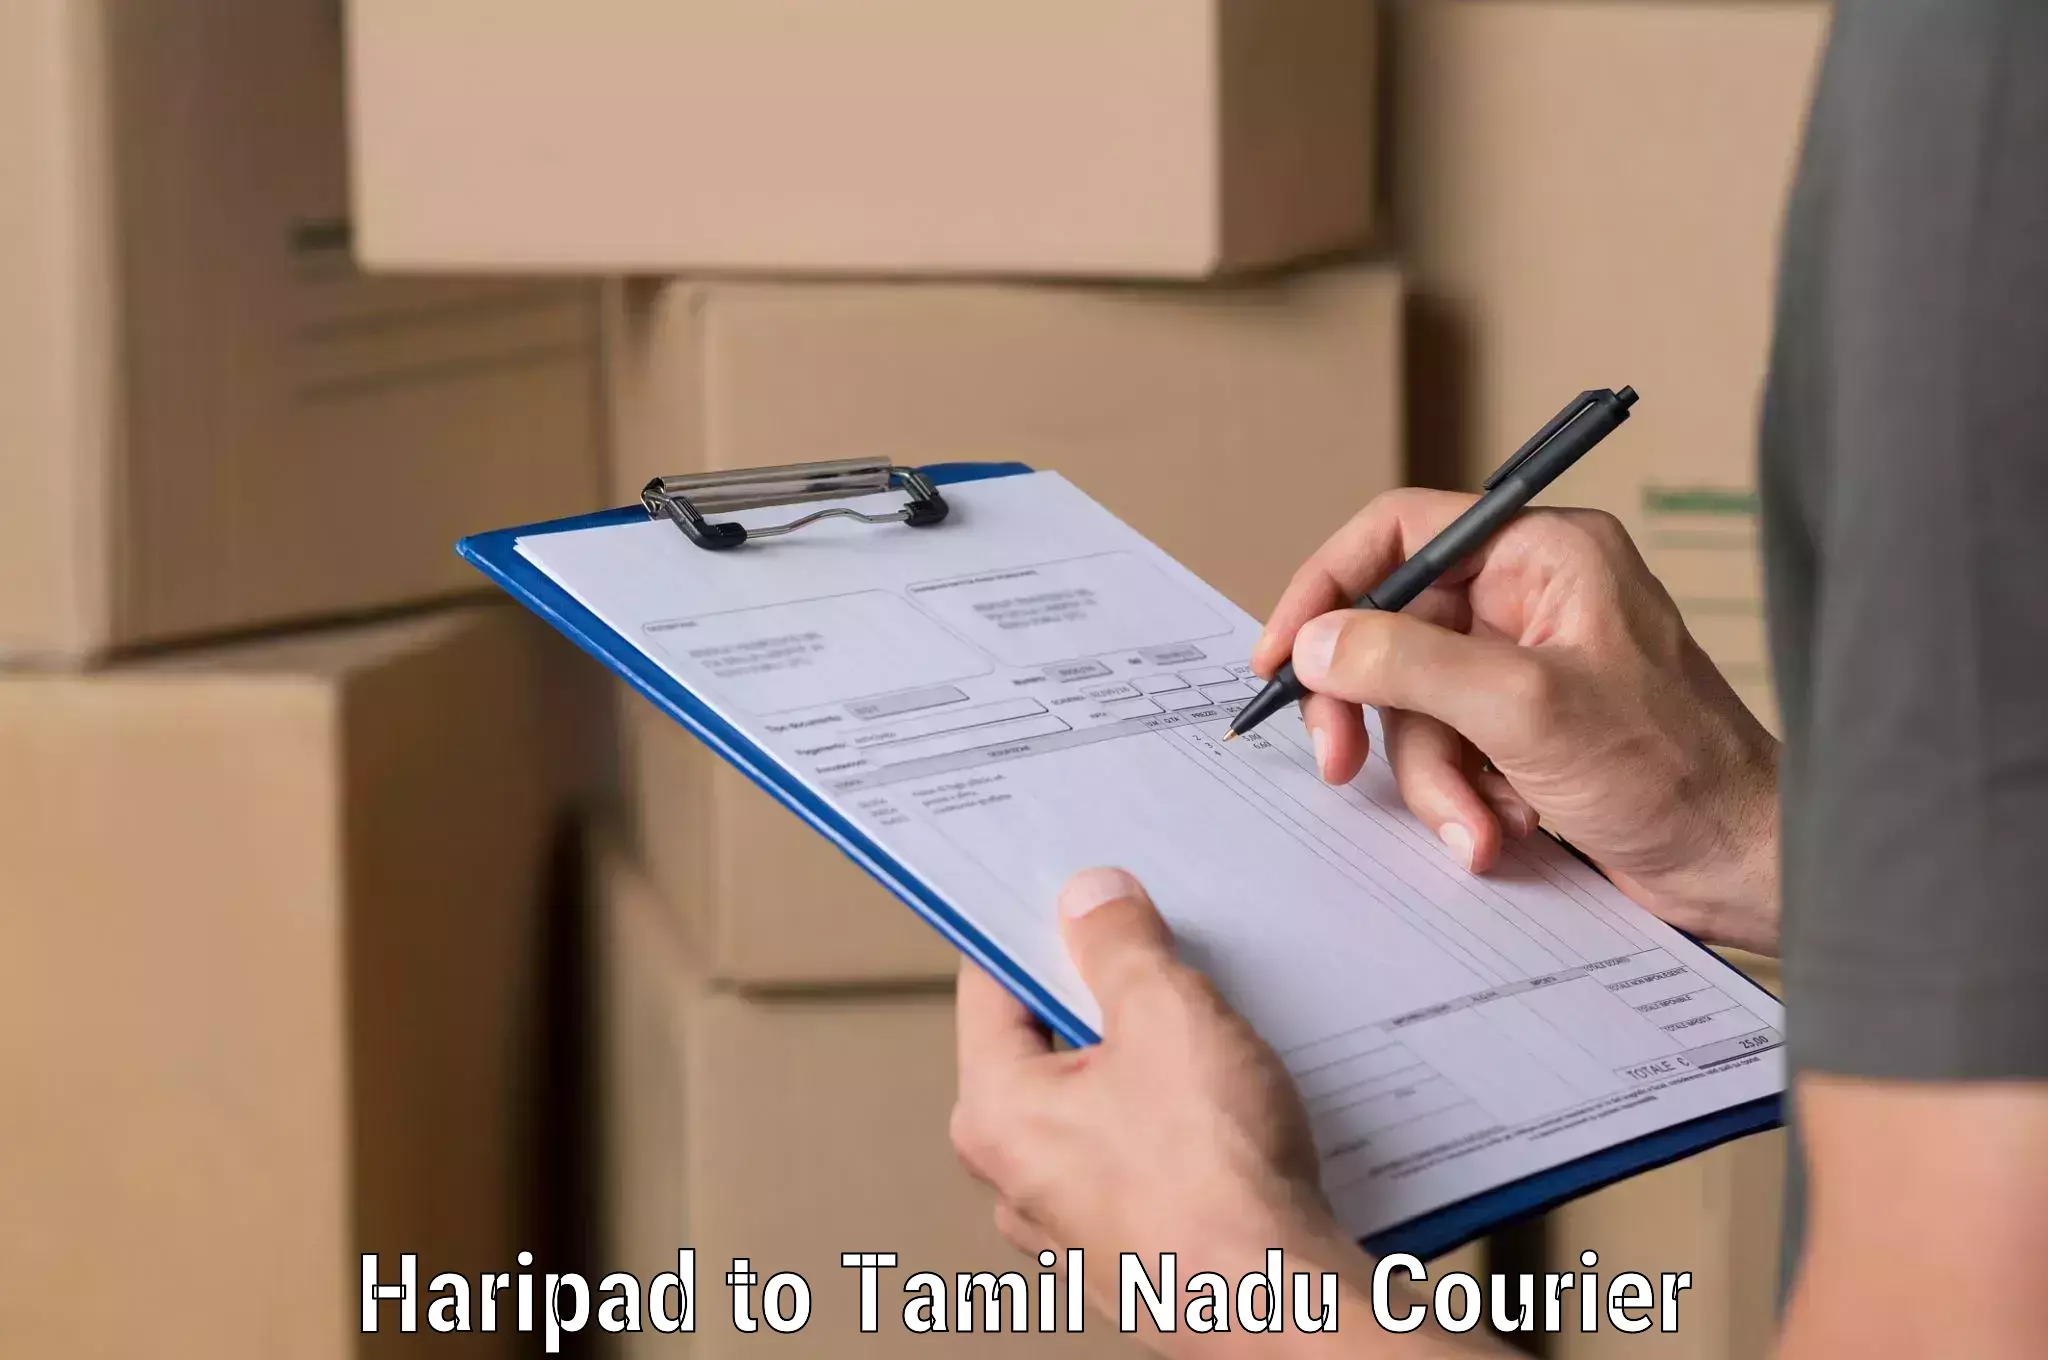 Advanced shipping network Haripad to Manapparai